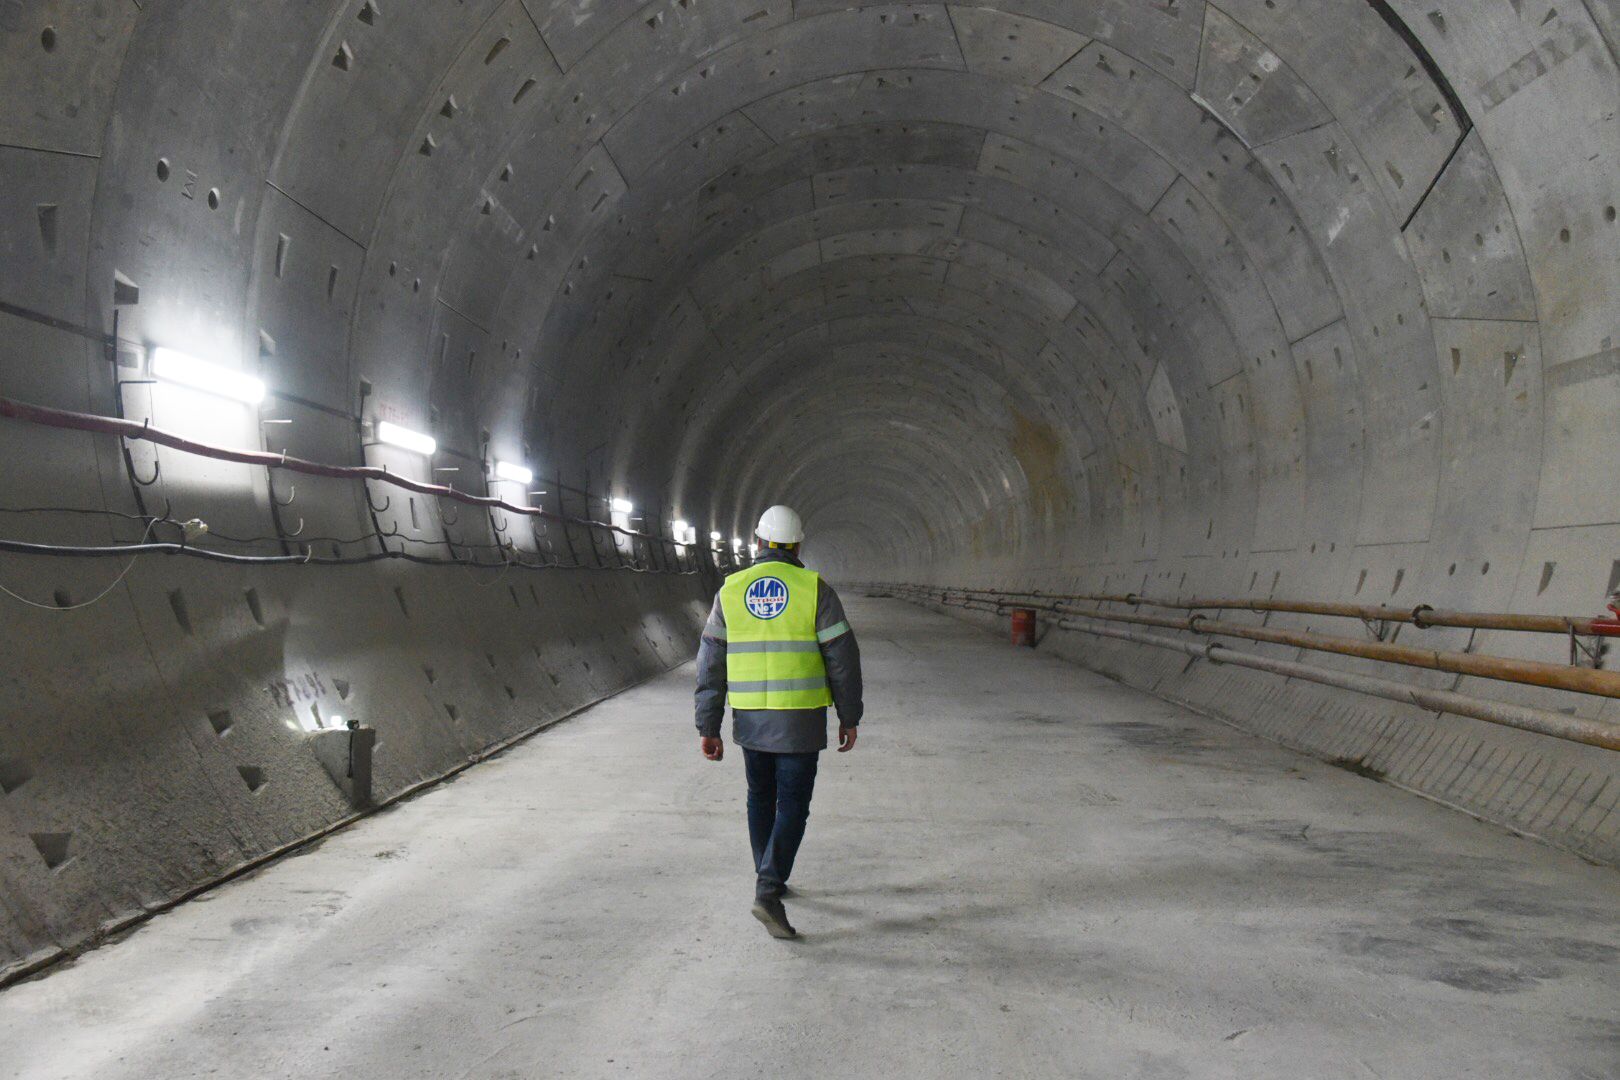 Сокольническую линию метро планируют продлить к 2023 году. Фото: Владимир Новиков